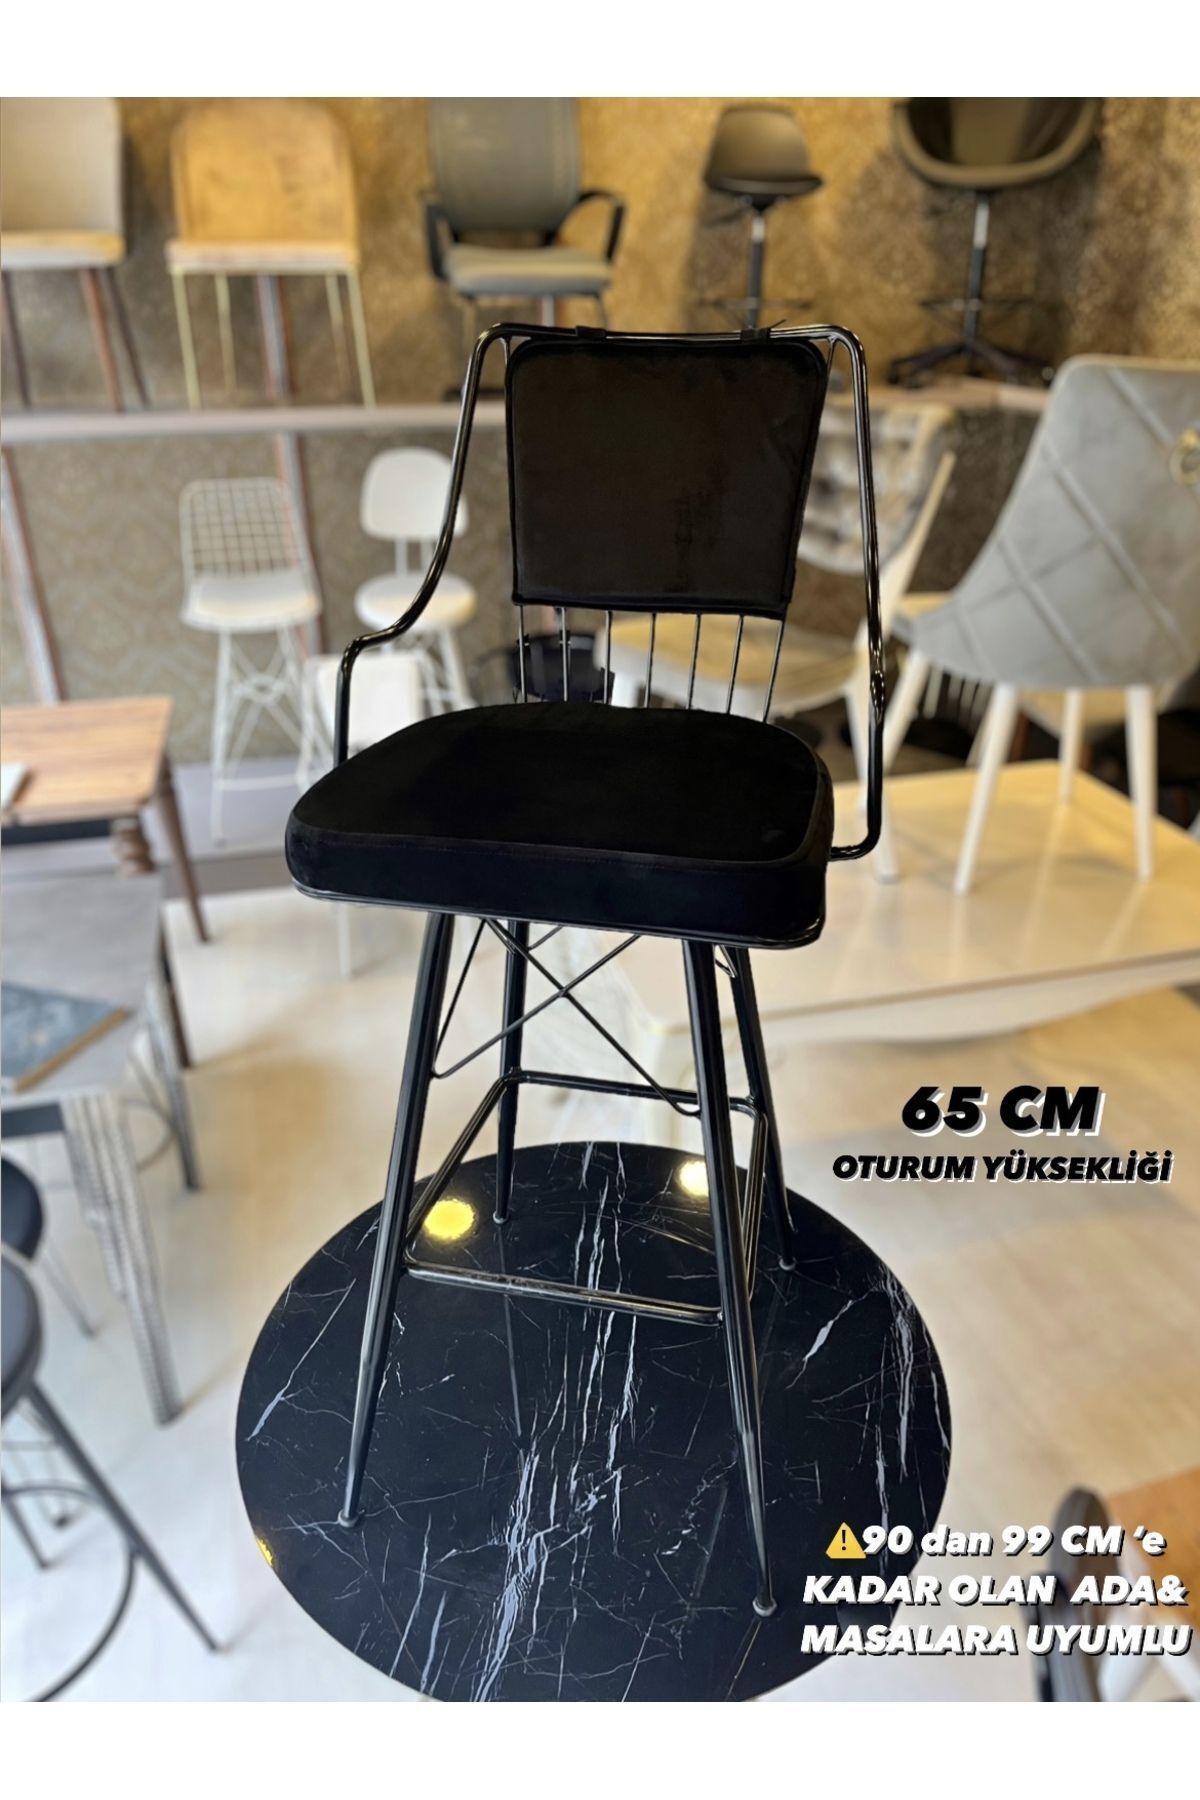 Sandalye Shop Yeni Reina Bar Sandalyesi Babyface Kumaş 65 cm Siyah.90 ile 99 cm arası Ada&Masalara uyumlu